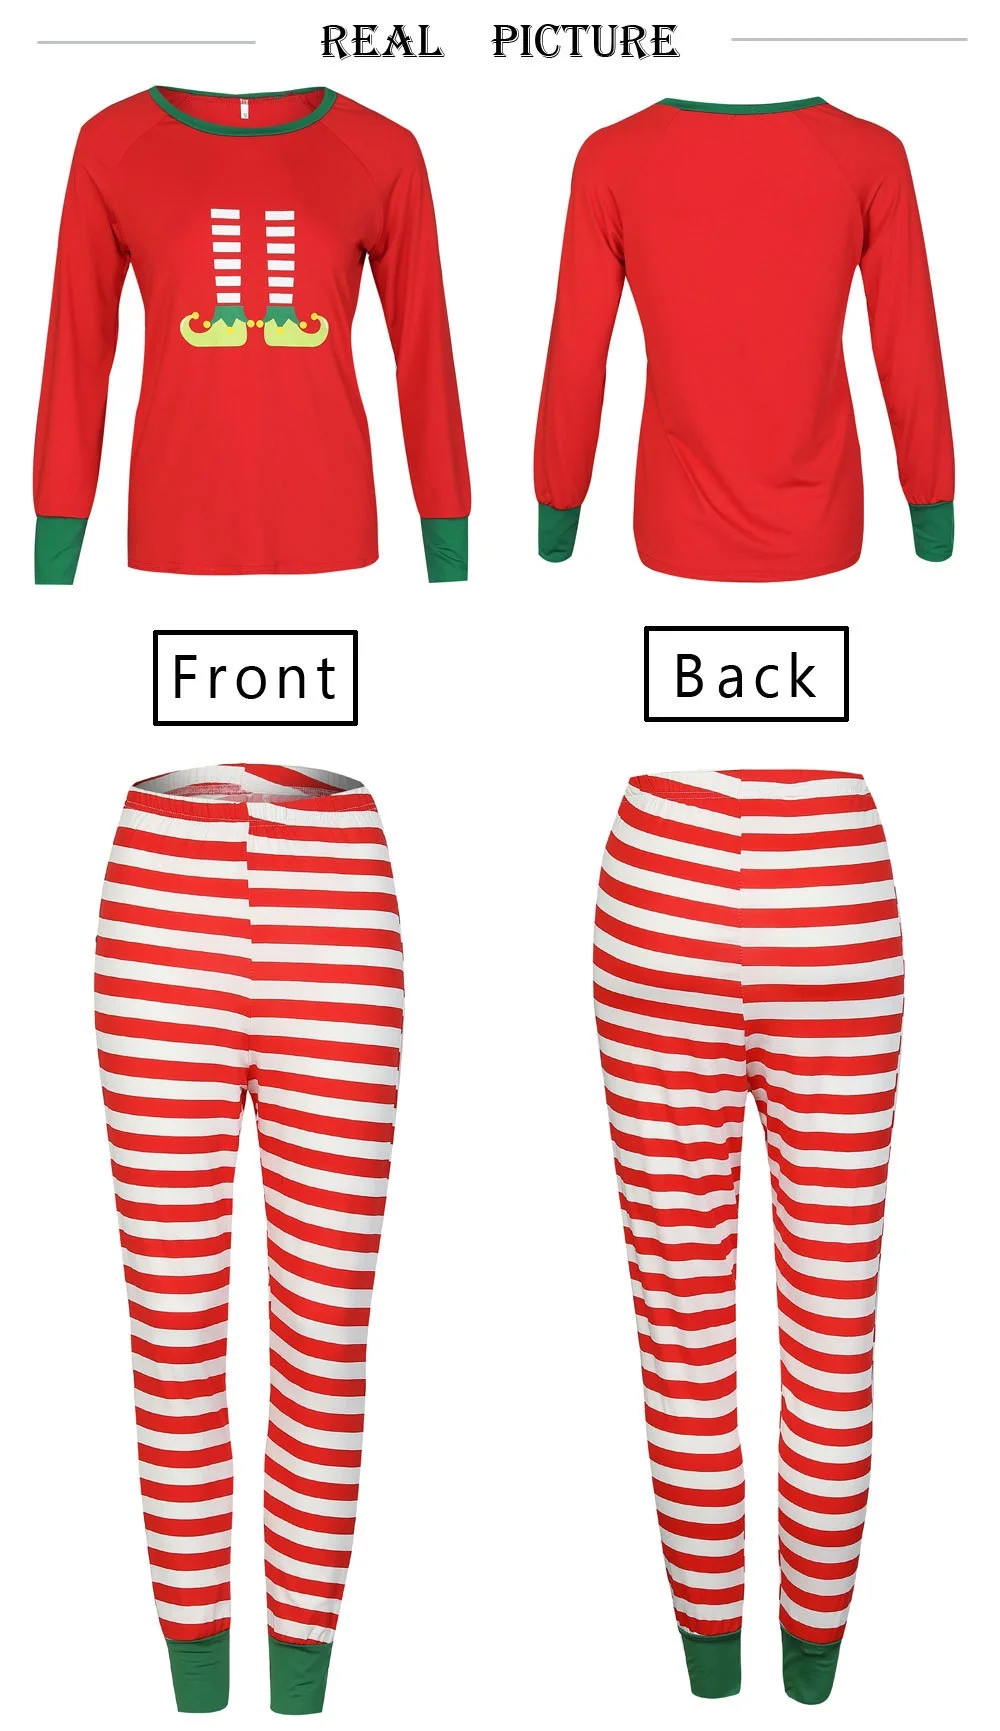 Семейные повседневные рождественские пижамы; одинаковые комплекты для семьи; одежда для мамы и дочки, папы и сына; рождественские пижамы для всей семьи